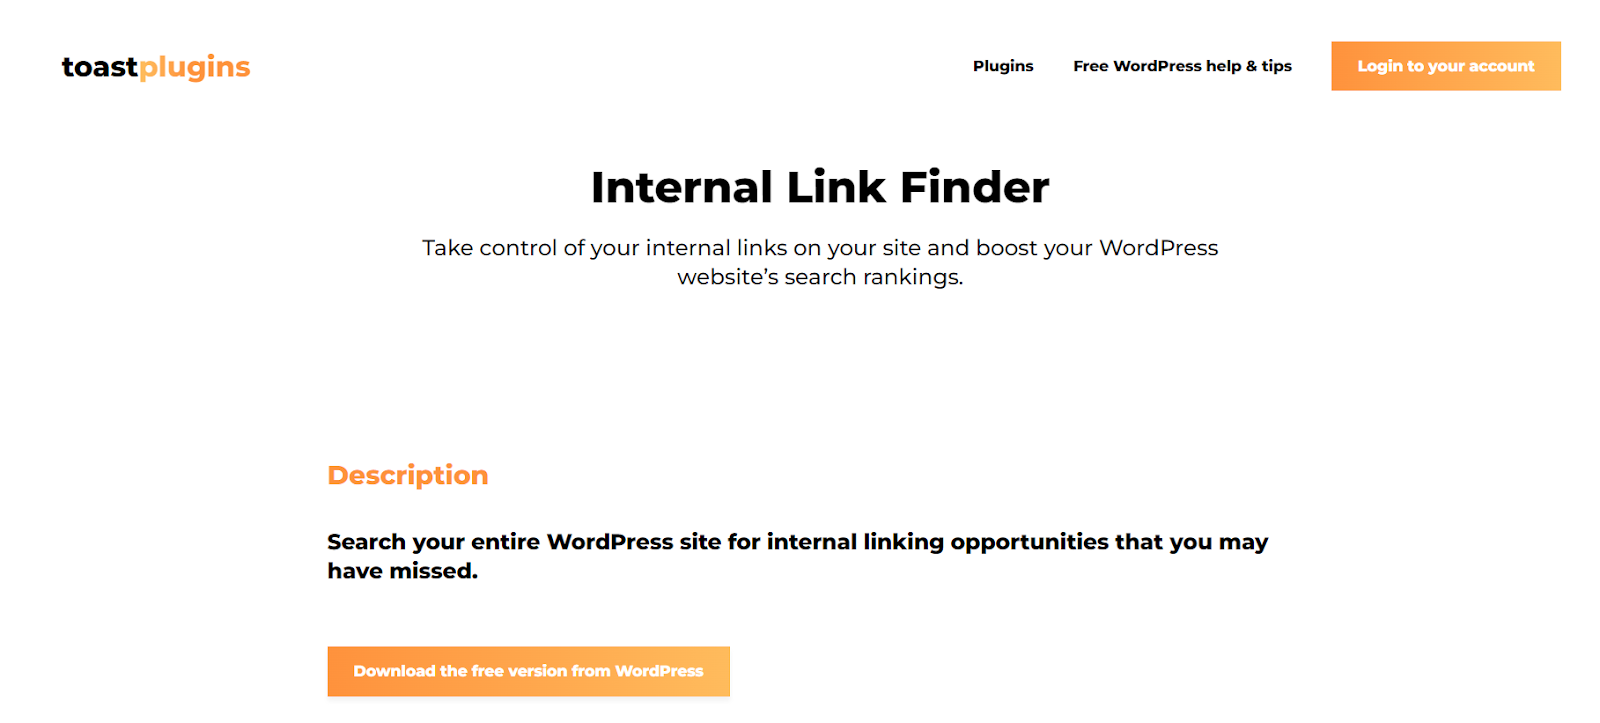 Internal Link Finder